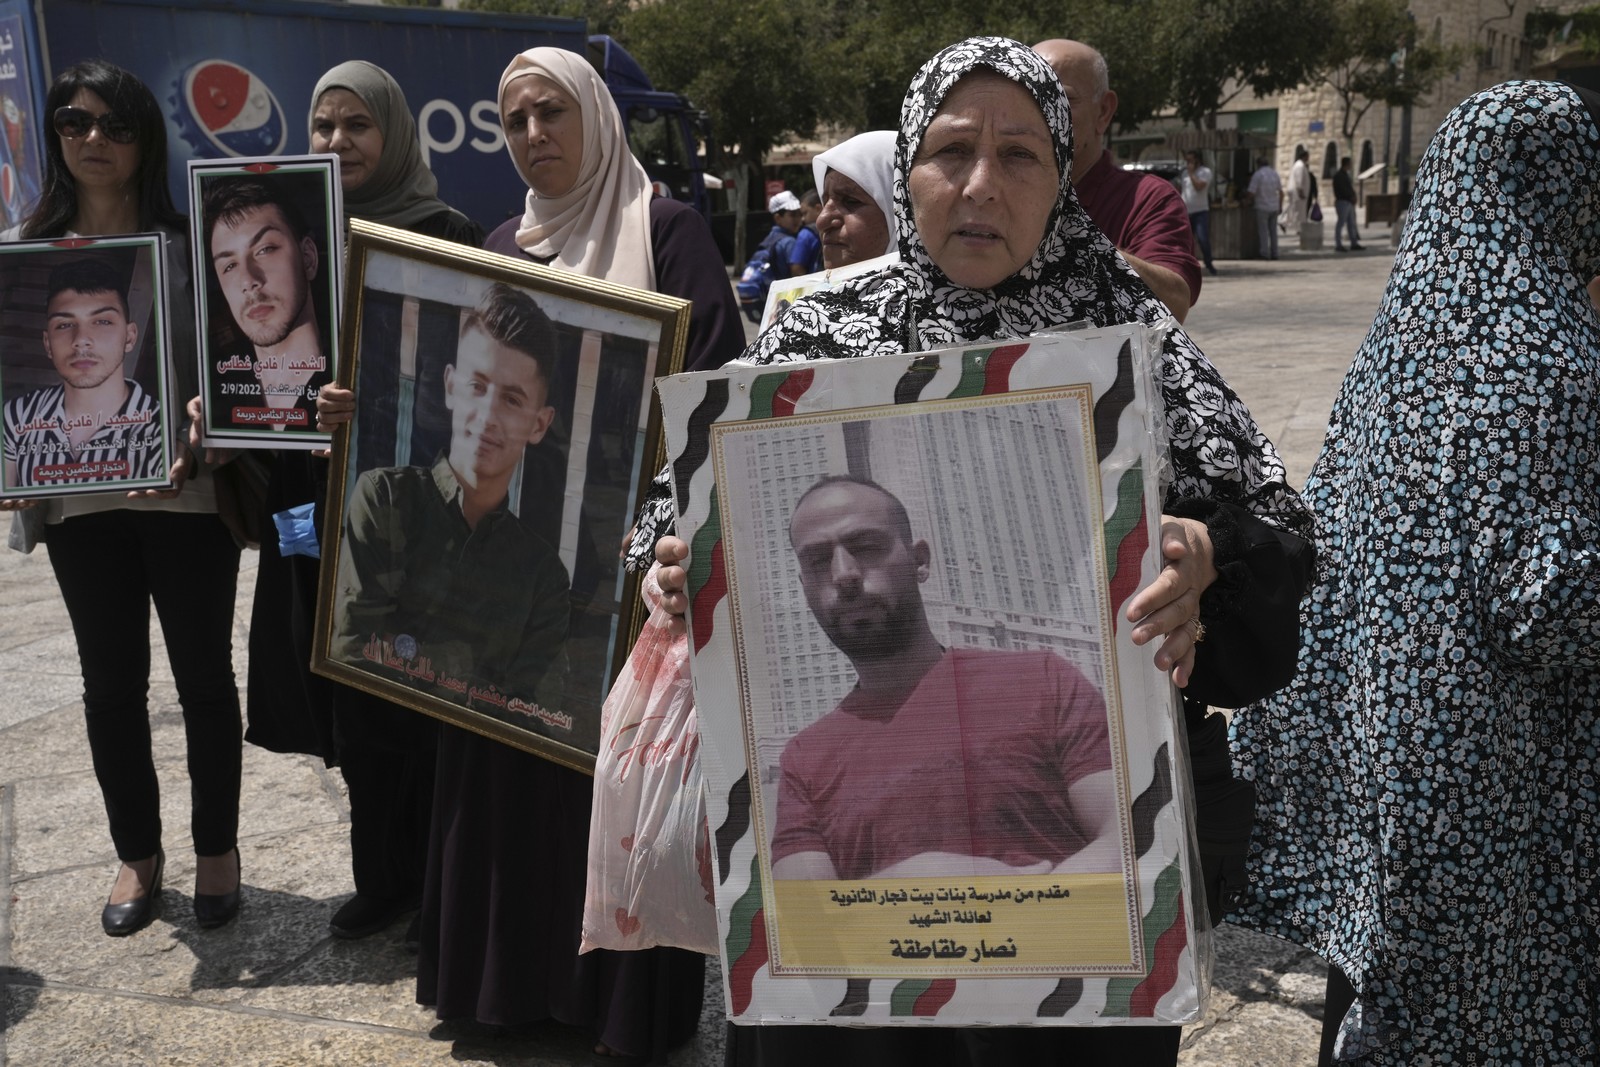 γάζα: οι παλαιστίνιοι αιχμάλωτοι που απελευθερώθηκαν, καταγγέλλουν βασανιστήρια στις ισραηλινές φυλακές